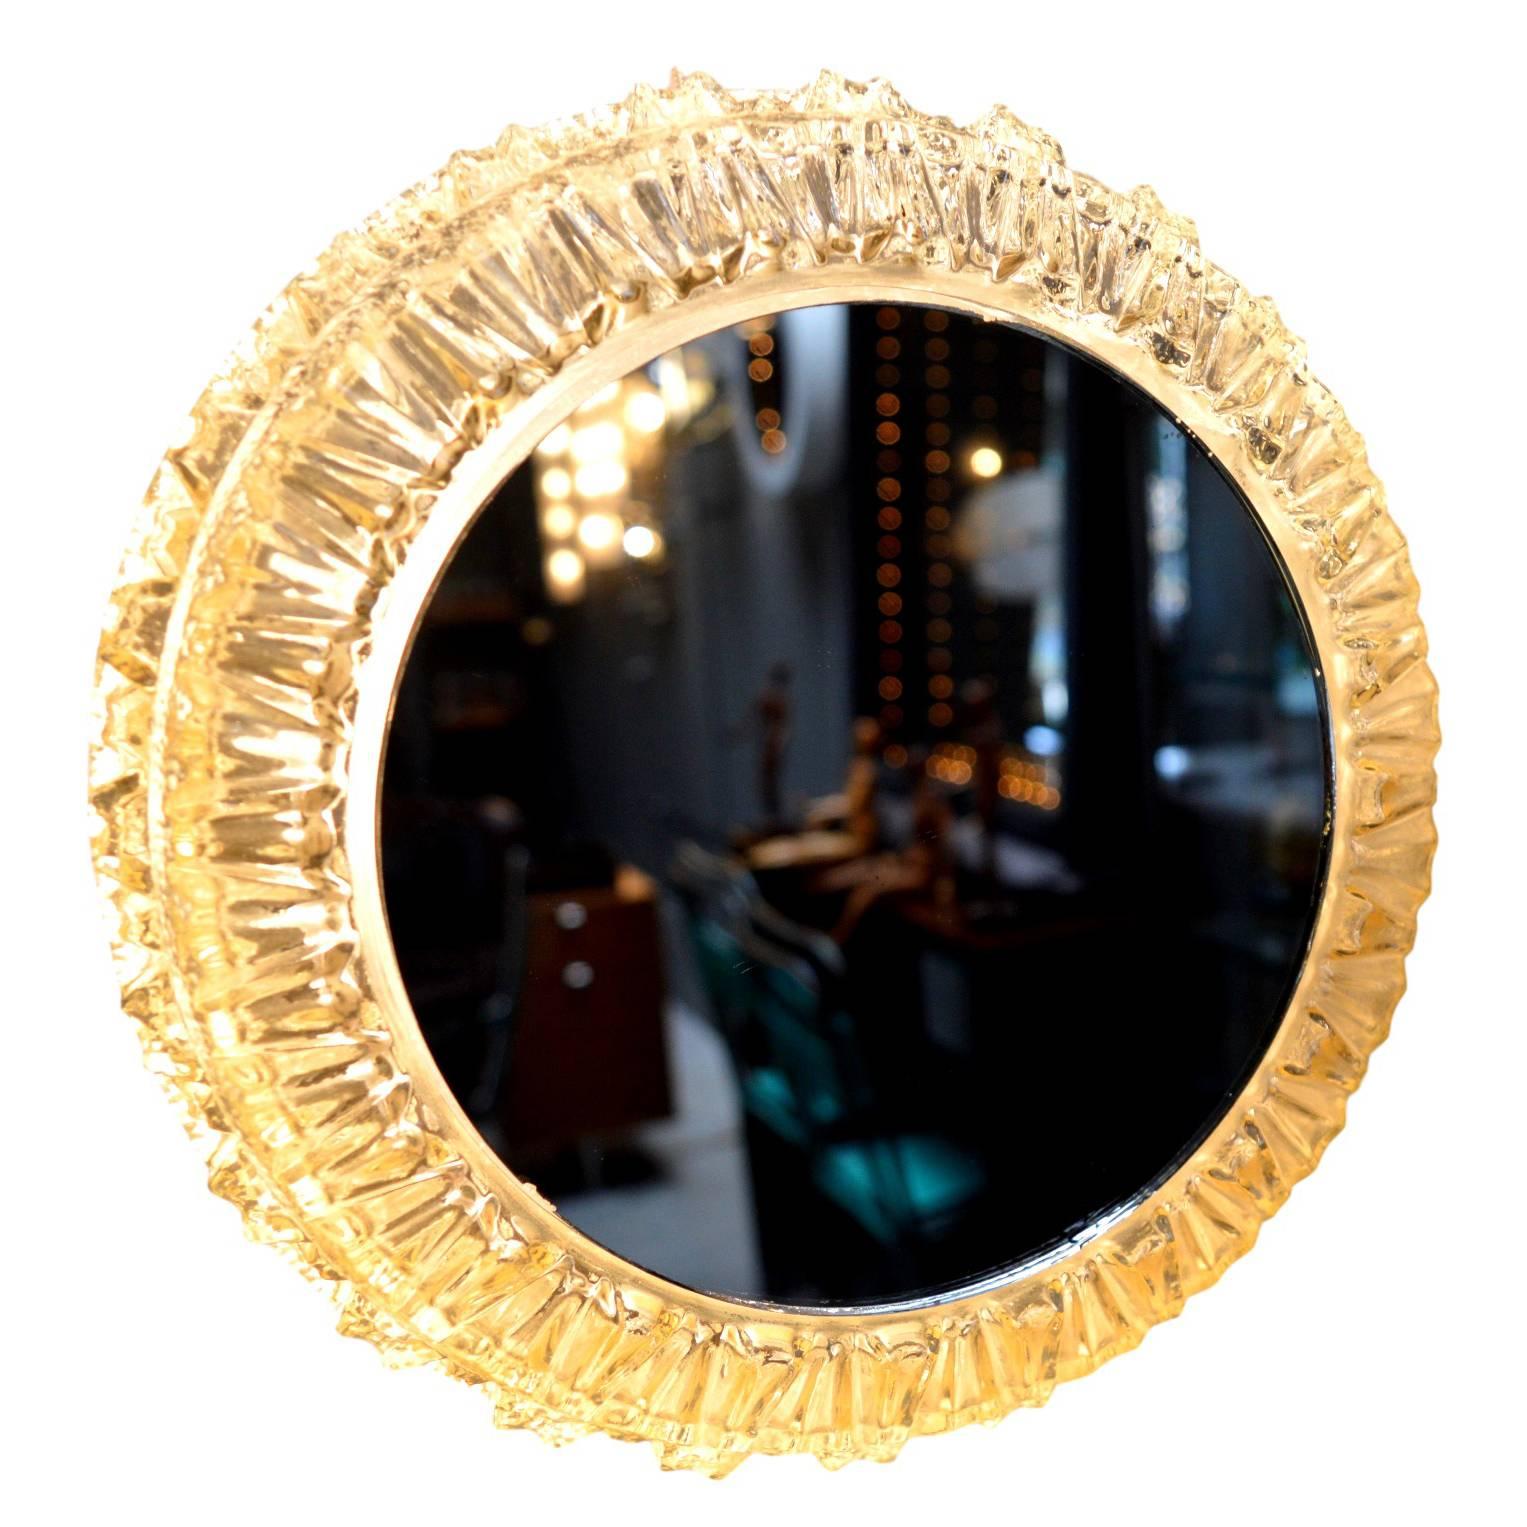 Wunderschöner deutscher Leuchtspiegel. Facettiertes Glas mit eingesetztem rundem Spiegel. Neu verkabelt. Ausgezeichneter Vintage-Zustand Toller Wandspiegel oder bündige Montage.